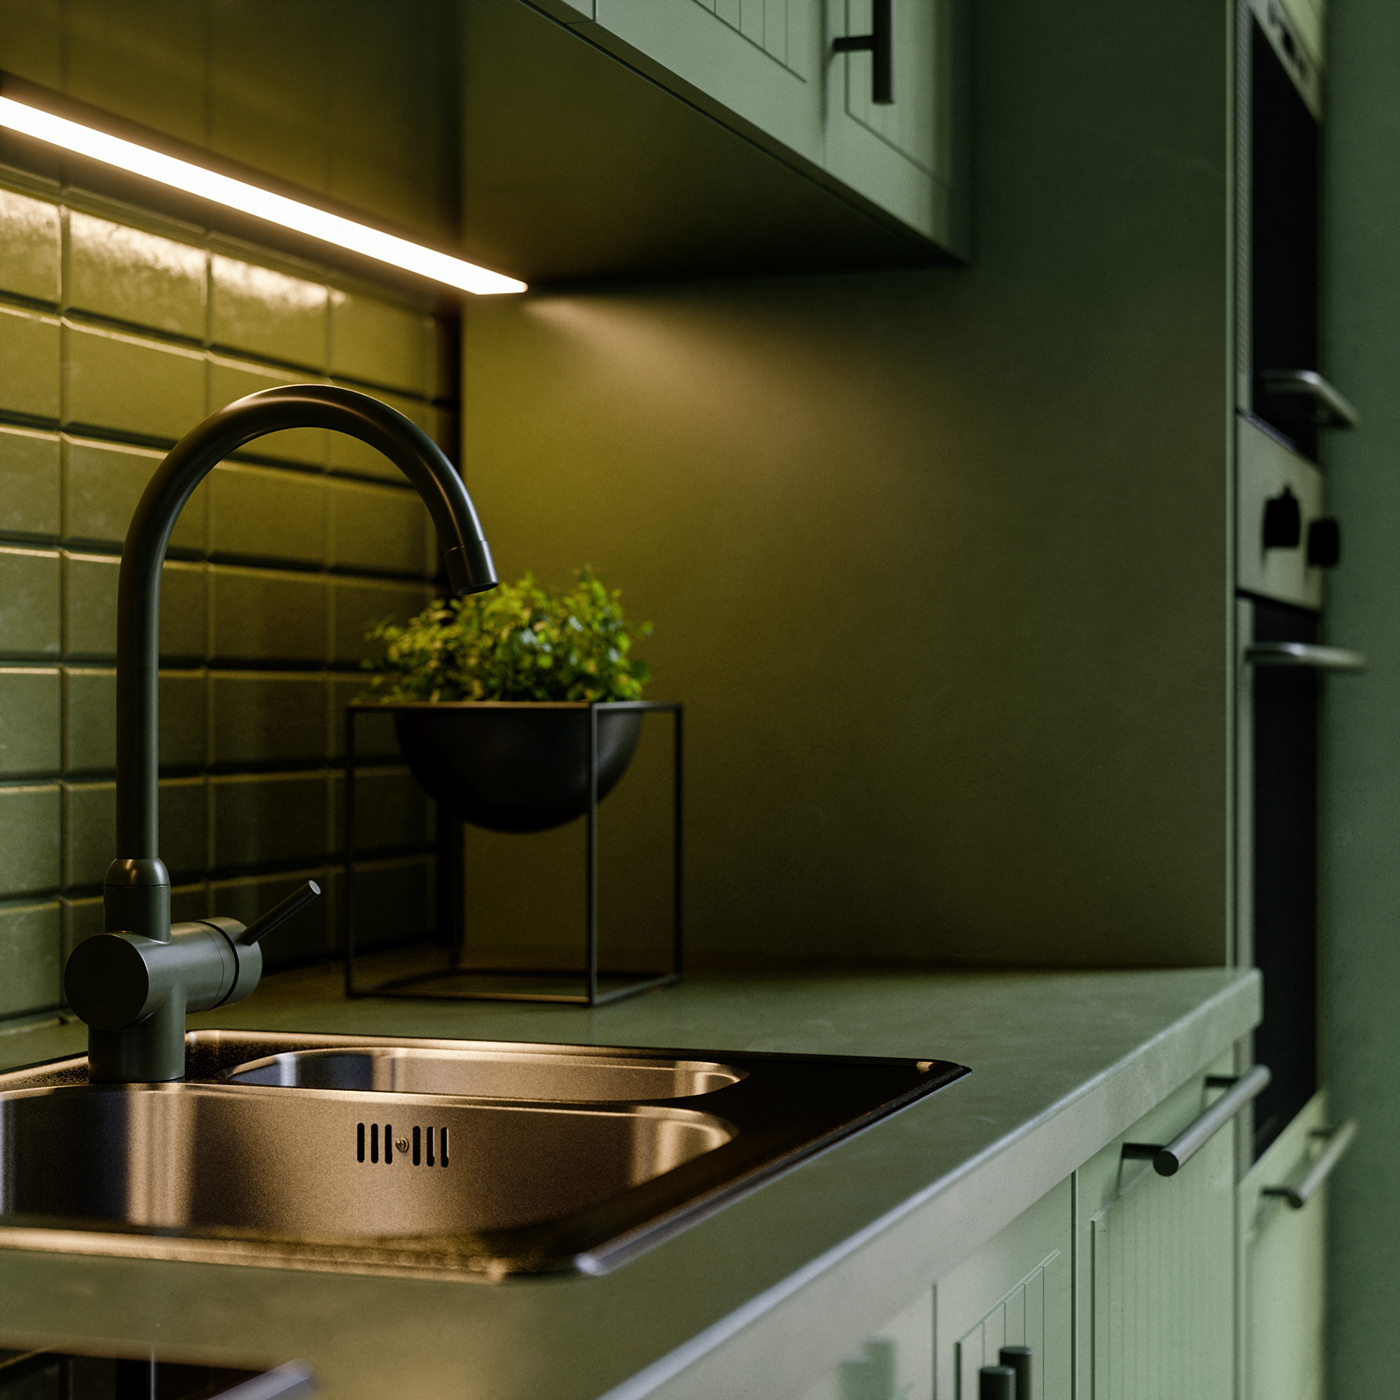 3dsmax archviz CGI FStorm green Interior kitchen Render rendering